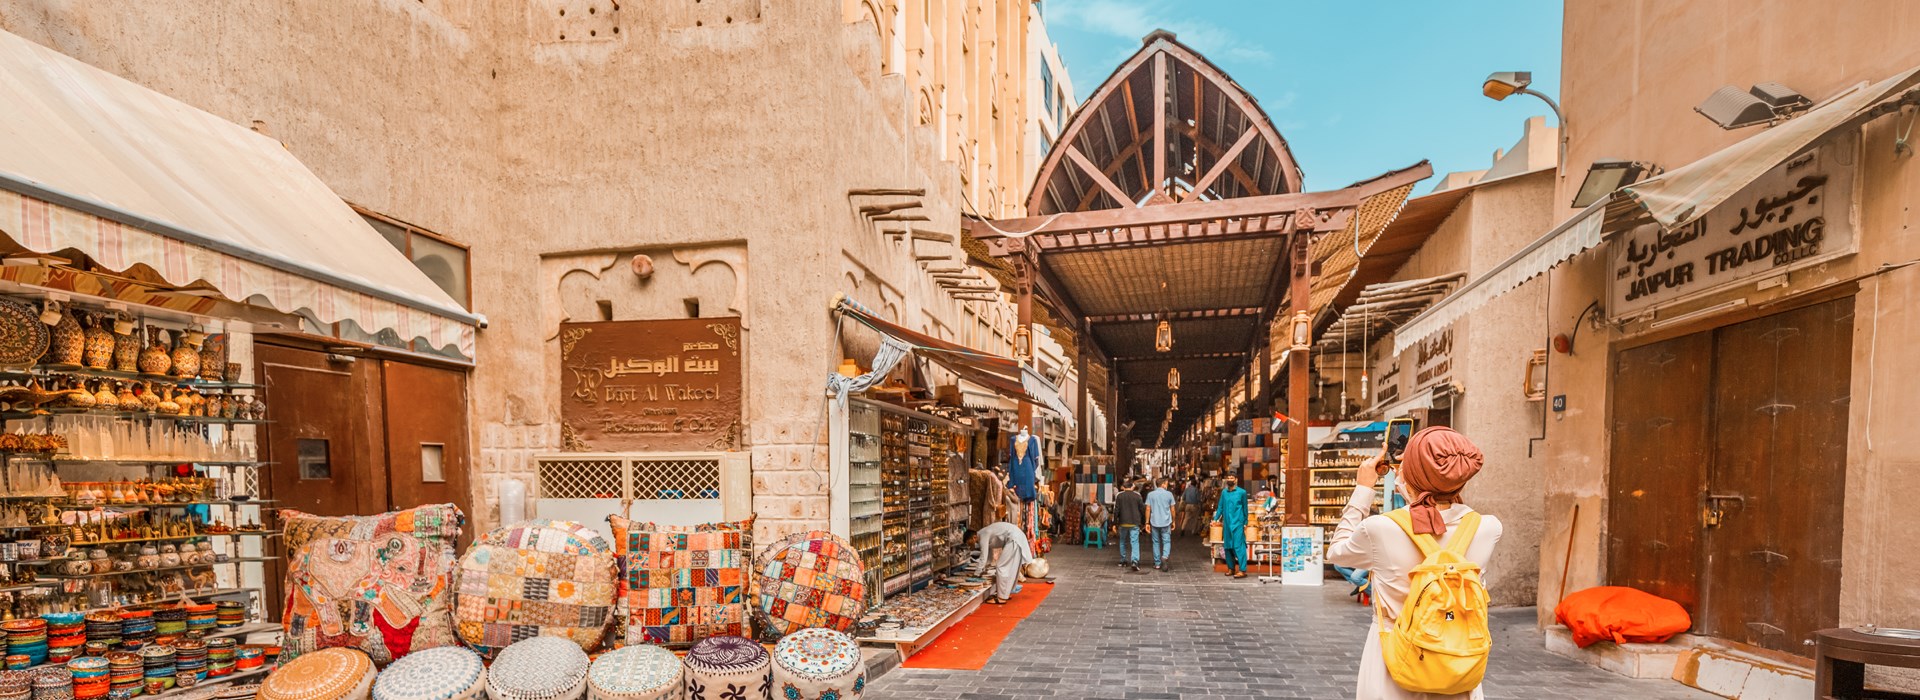 Visiter Le marché de Deira - Emirats Arabes Unis